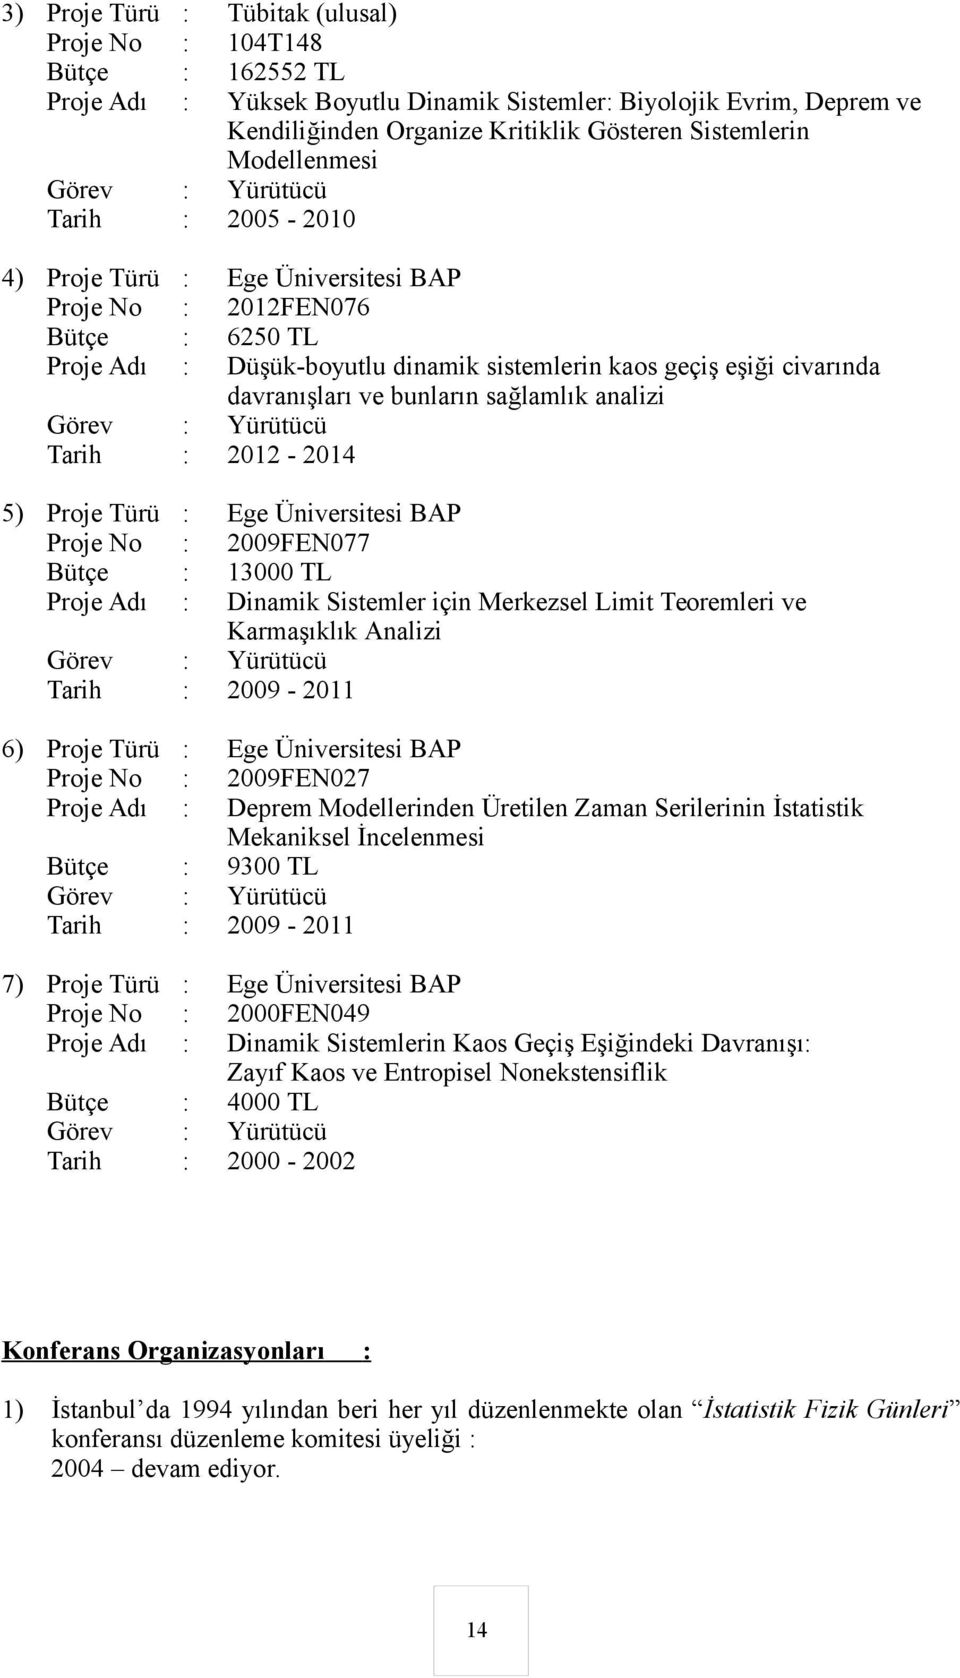 davranışları ve bunların sağlamlık analizi Görev : Yürütücü Tarih : 2012-2014 5) Proje Türü : Ege Üniversitesi BAP Proje No : 2009FEN077 Bütçe : 13000 TL Proje Adı : Dinamik Sistemler için Merkezsel